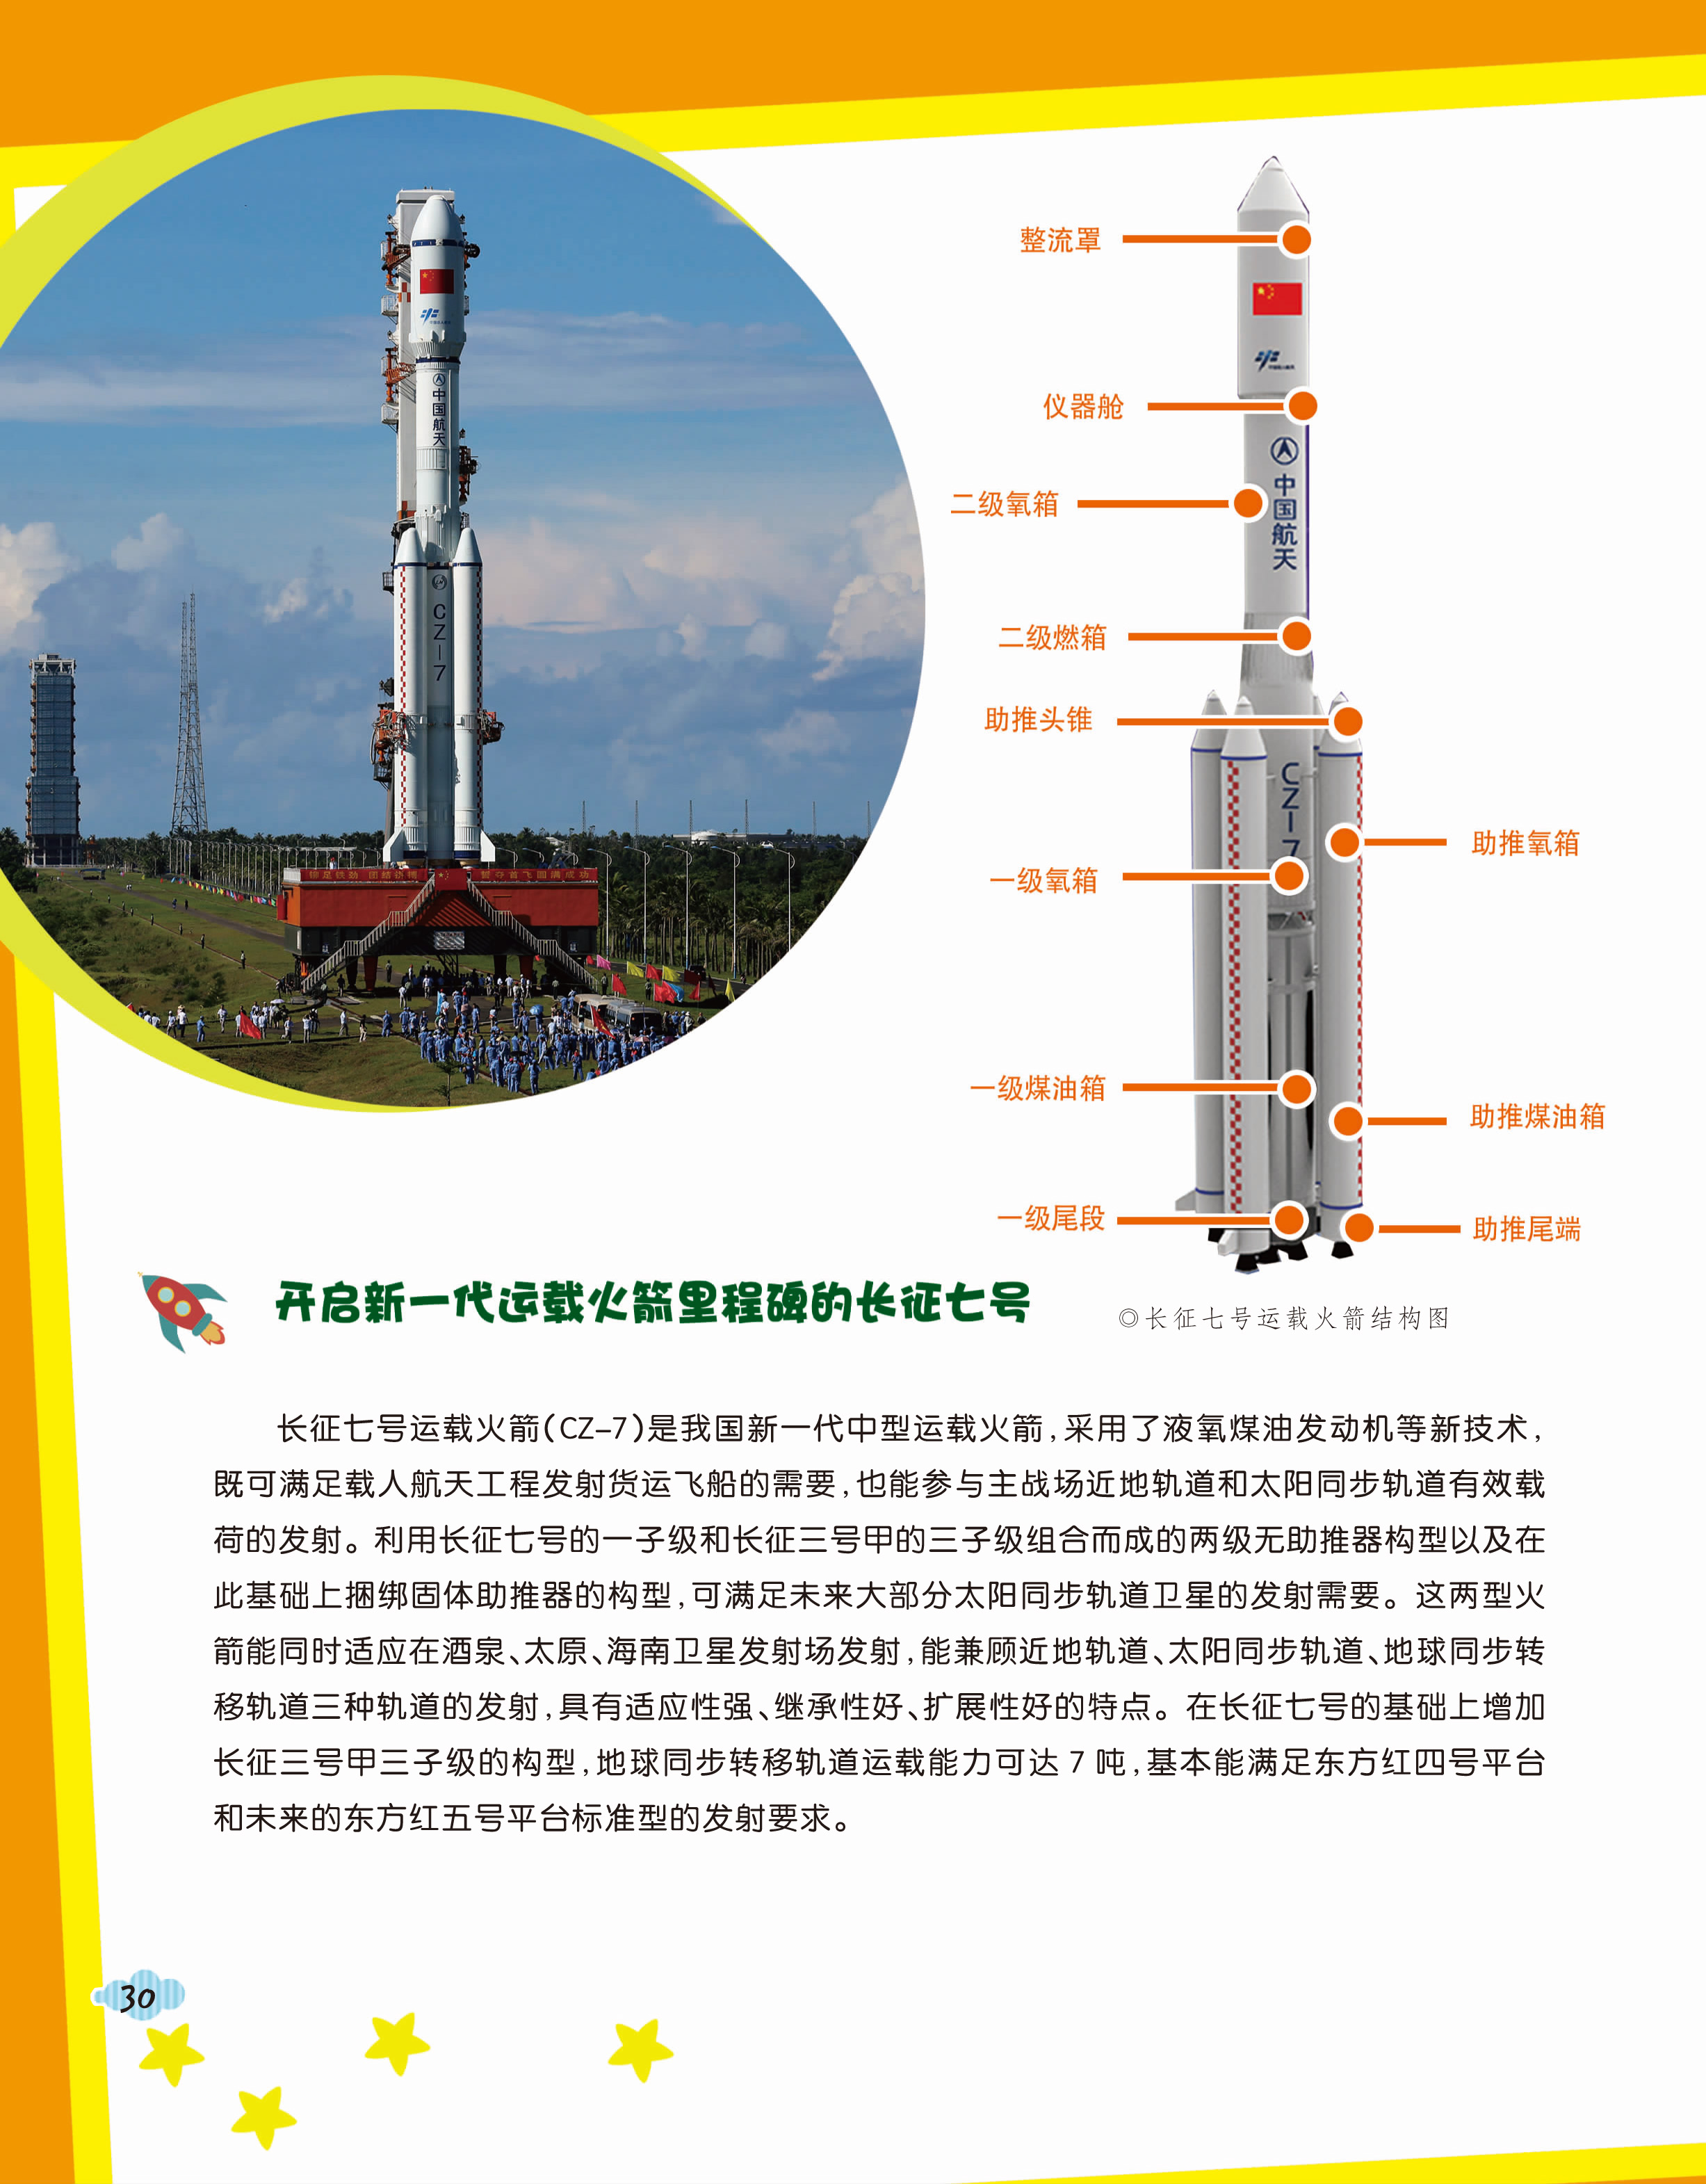 扶摇直上刺上青天——长征系列运载火箭发展史--中国